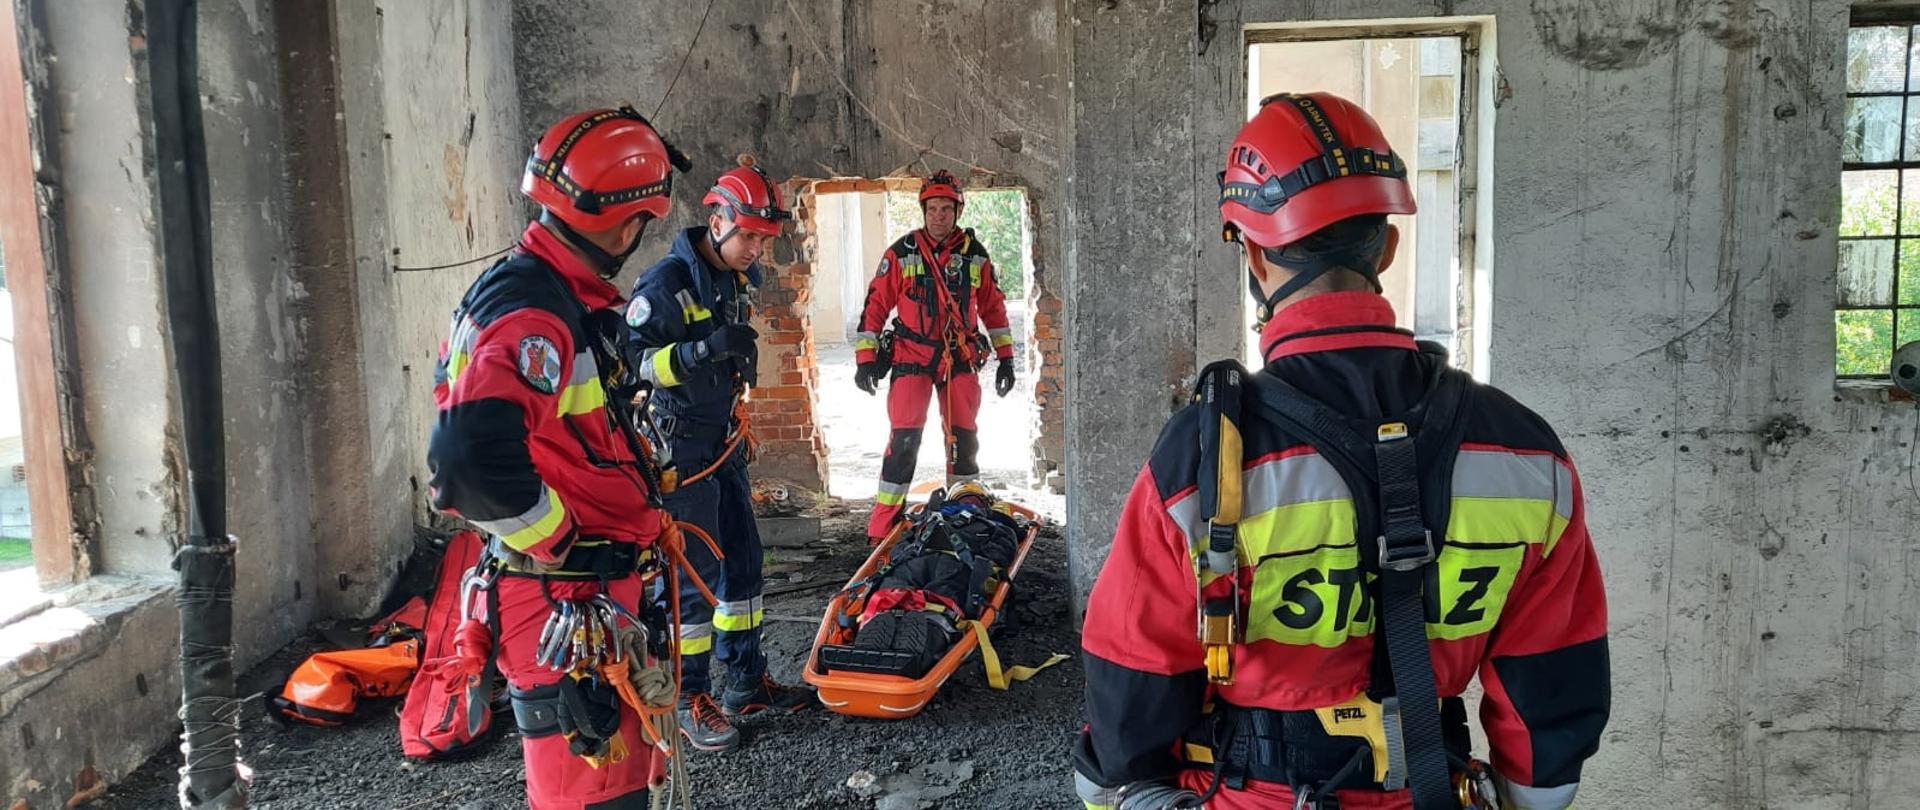 Ratownicy SGRW Opole podczas ćwiczeń ewakuują osobę poszkodowaną